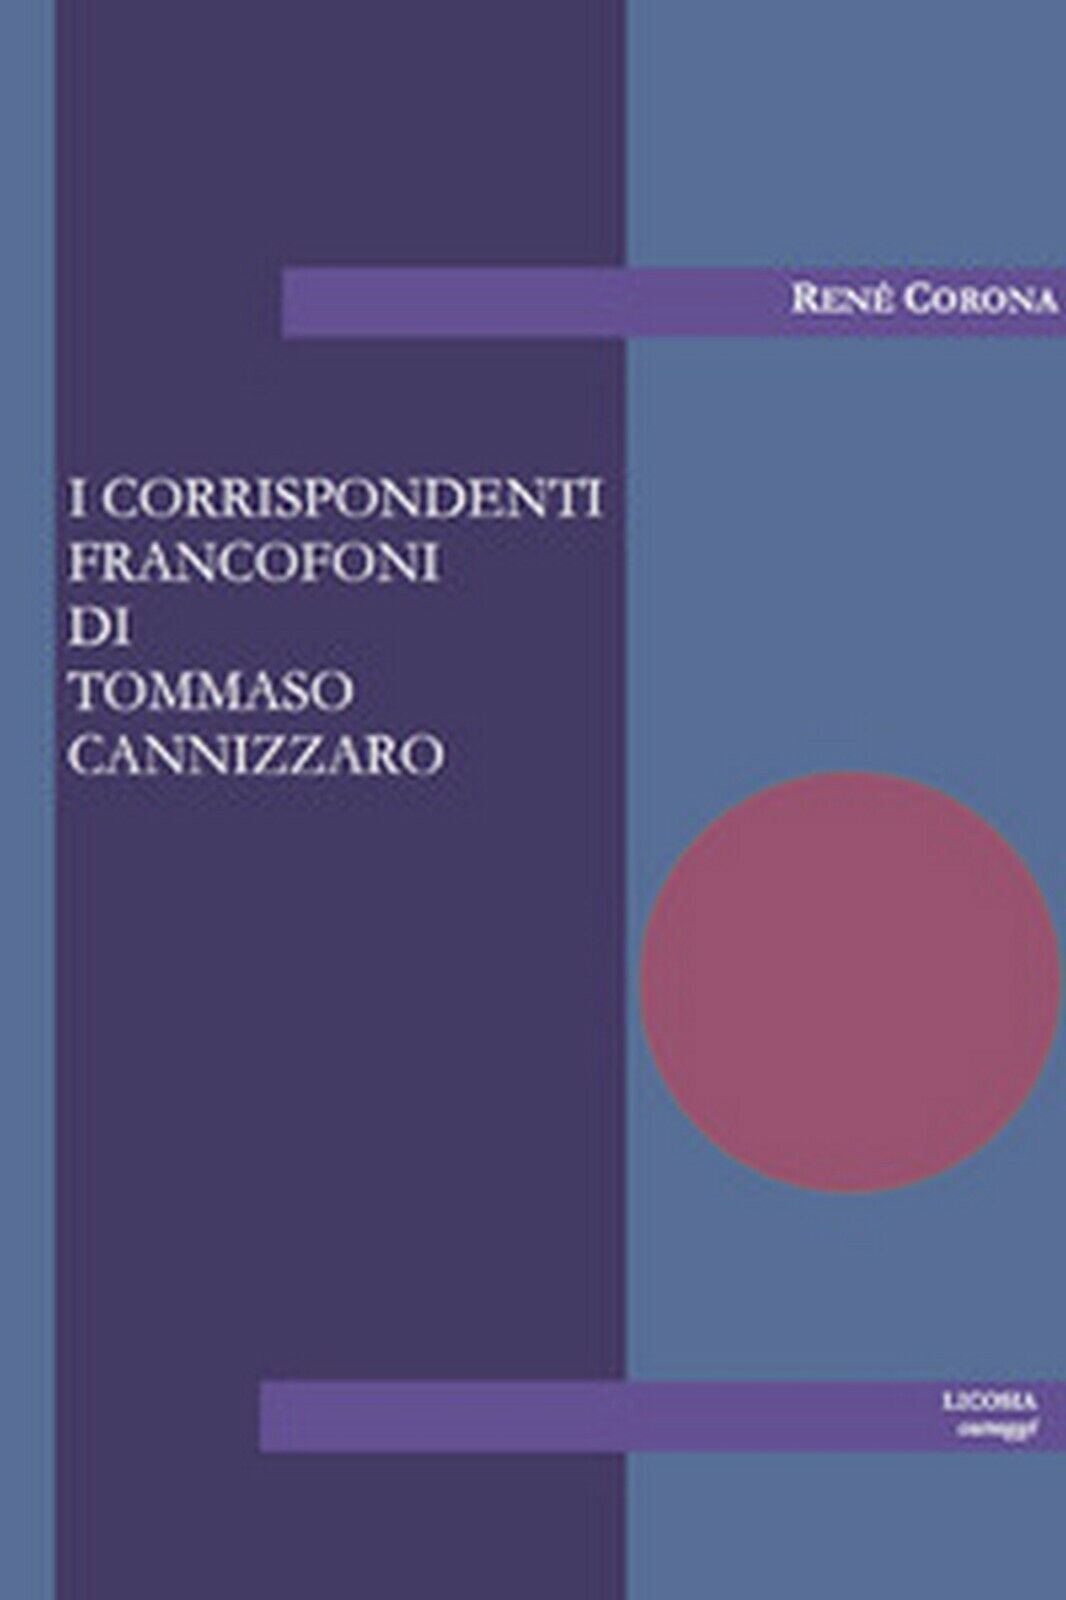 I corrispondenti francofoni di Tommaso Cannizzaro  di Ren? Corona,  2017,  Licos